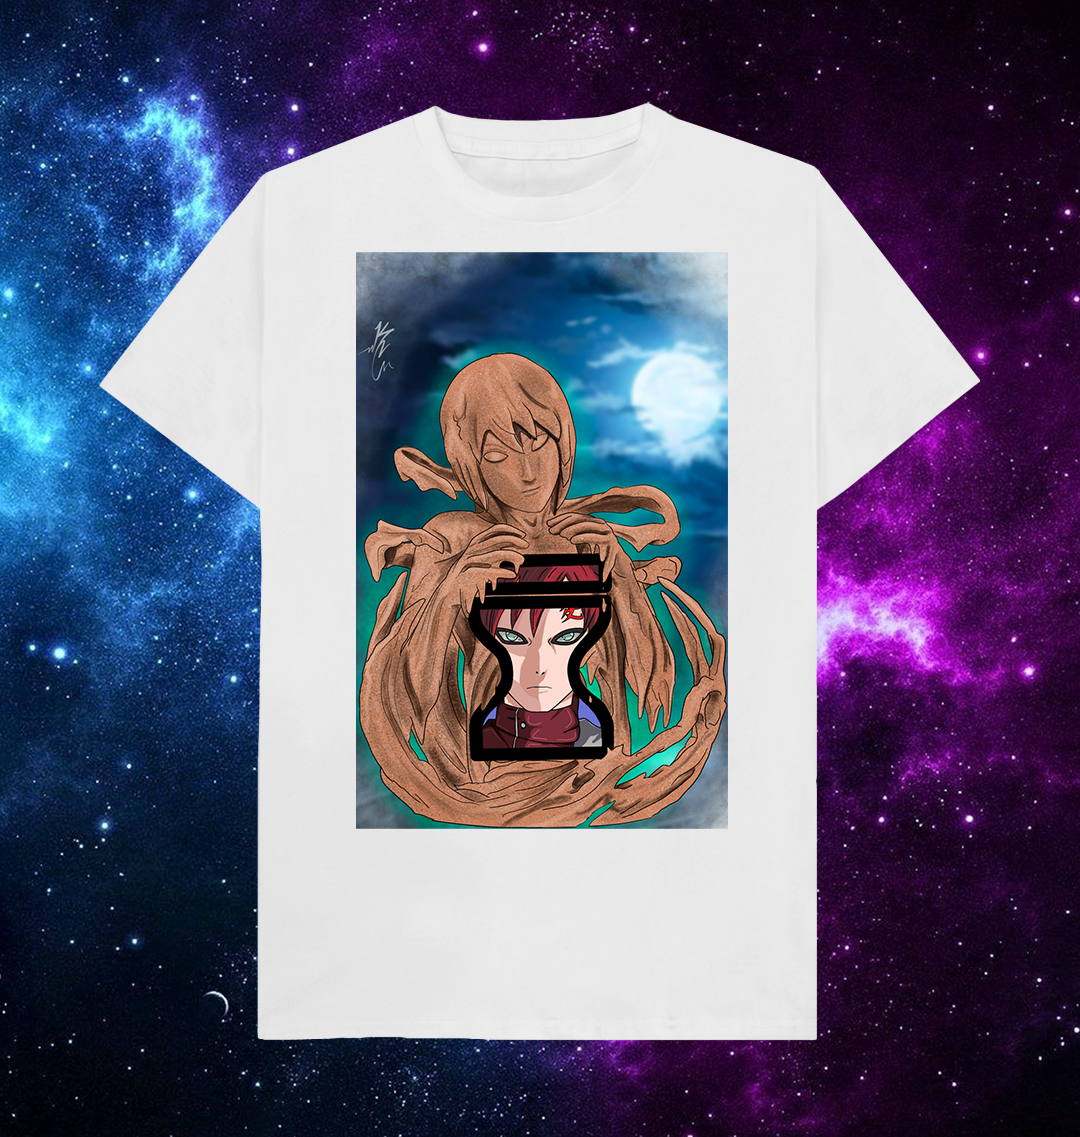 Gaara & Sand Mother by Kyle Cook Artist T-Shirt